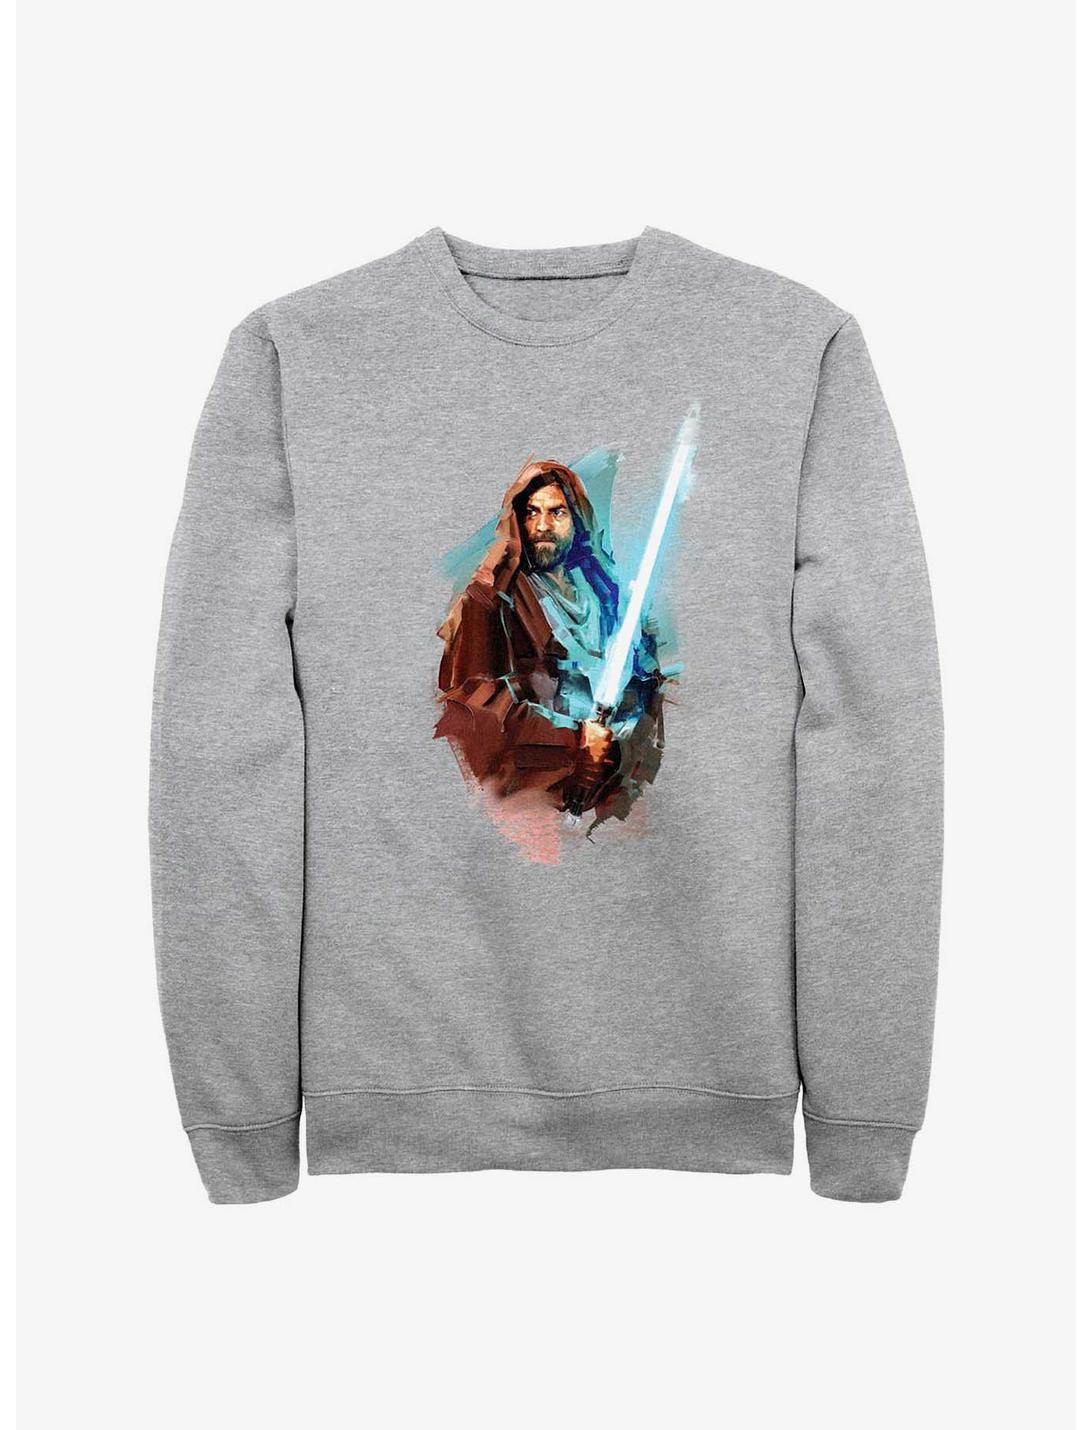 Star Wars Obi-Wan Kenobi Watercolor Style Sweatshirt, ATH HTR, hi-res